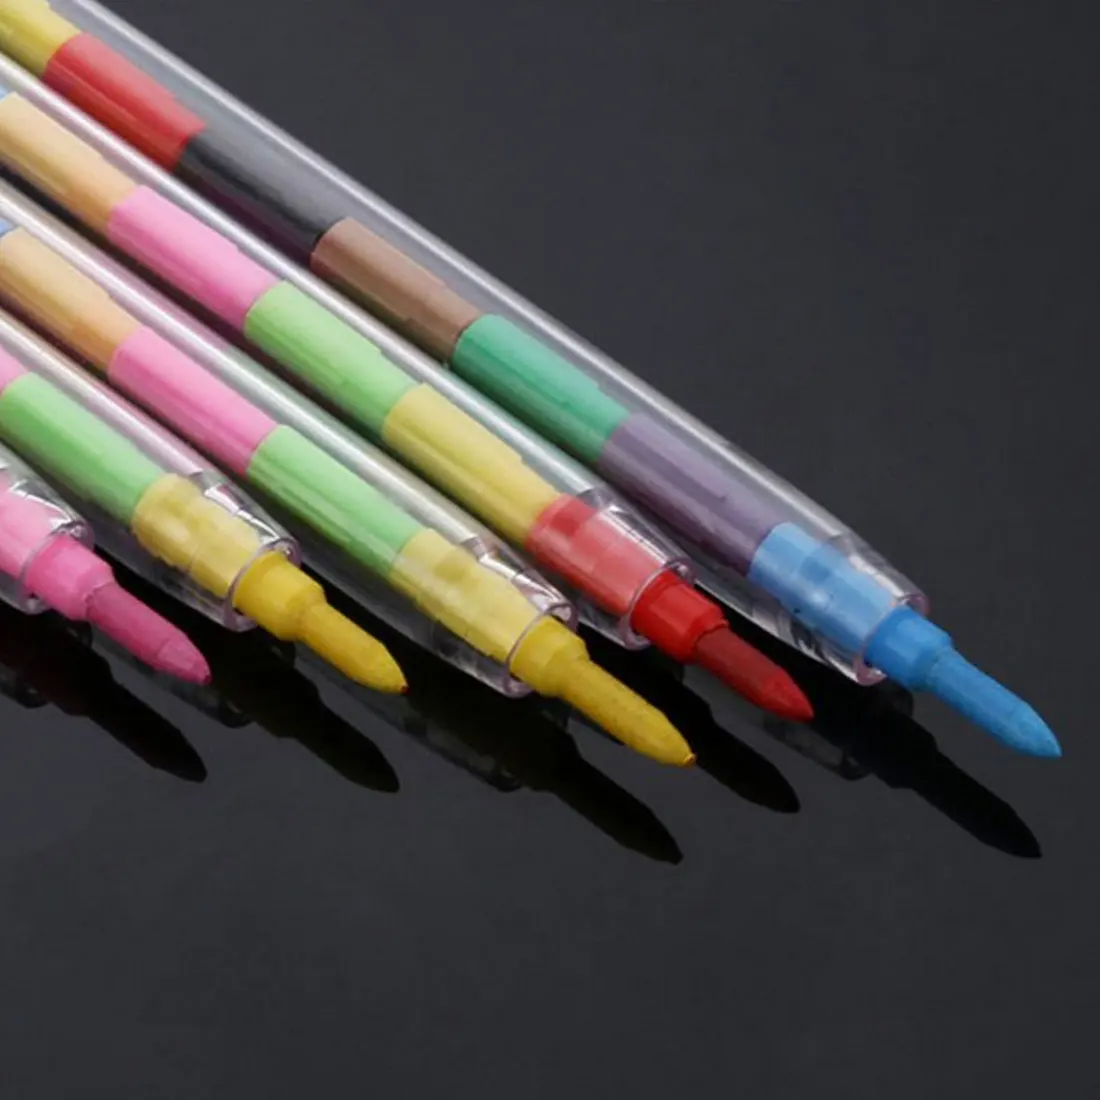 Цветная ручка граффити для рисования Рисование ручка искусство поставка 10 цветов/шт